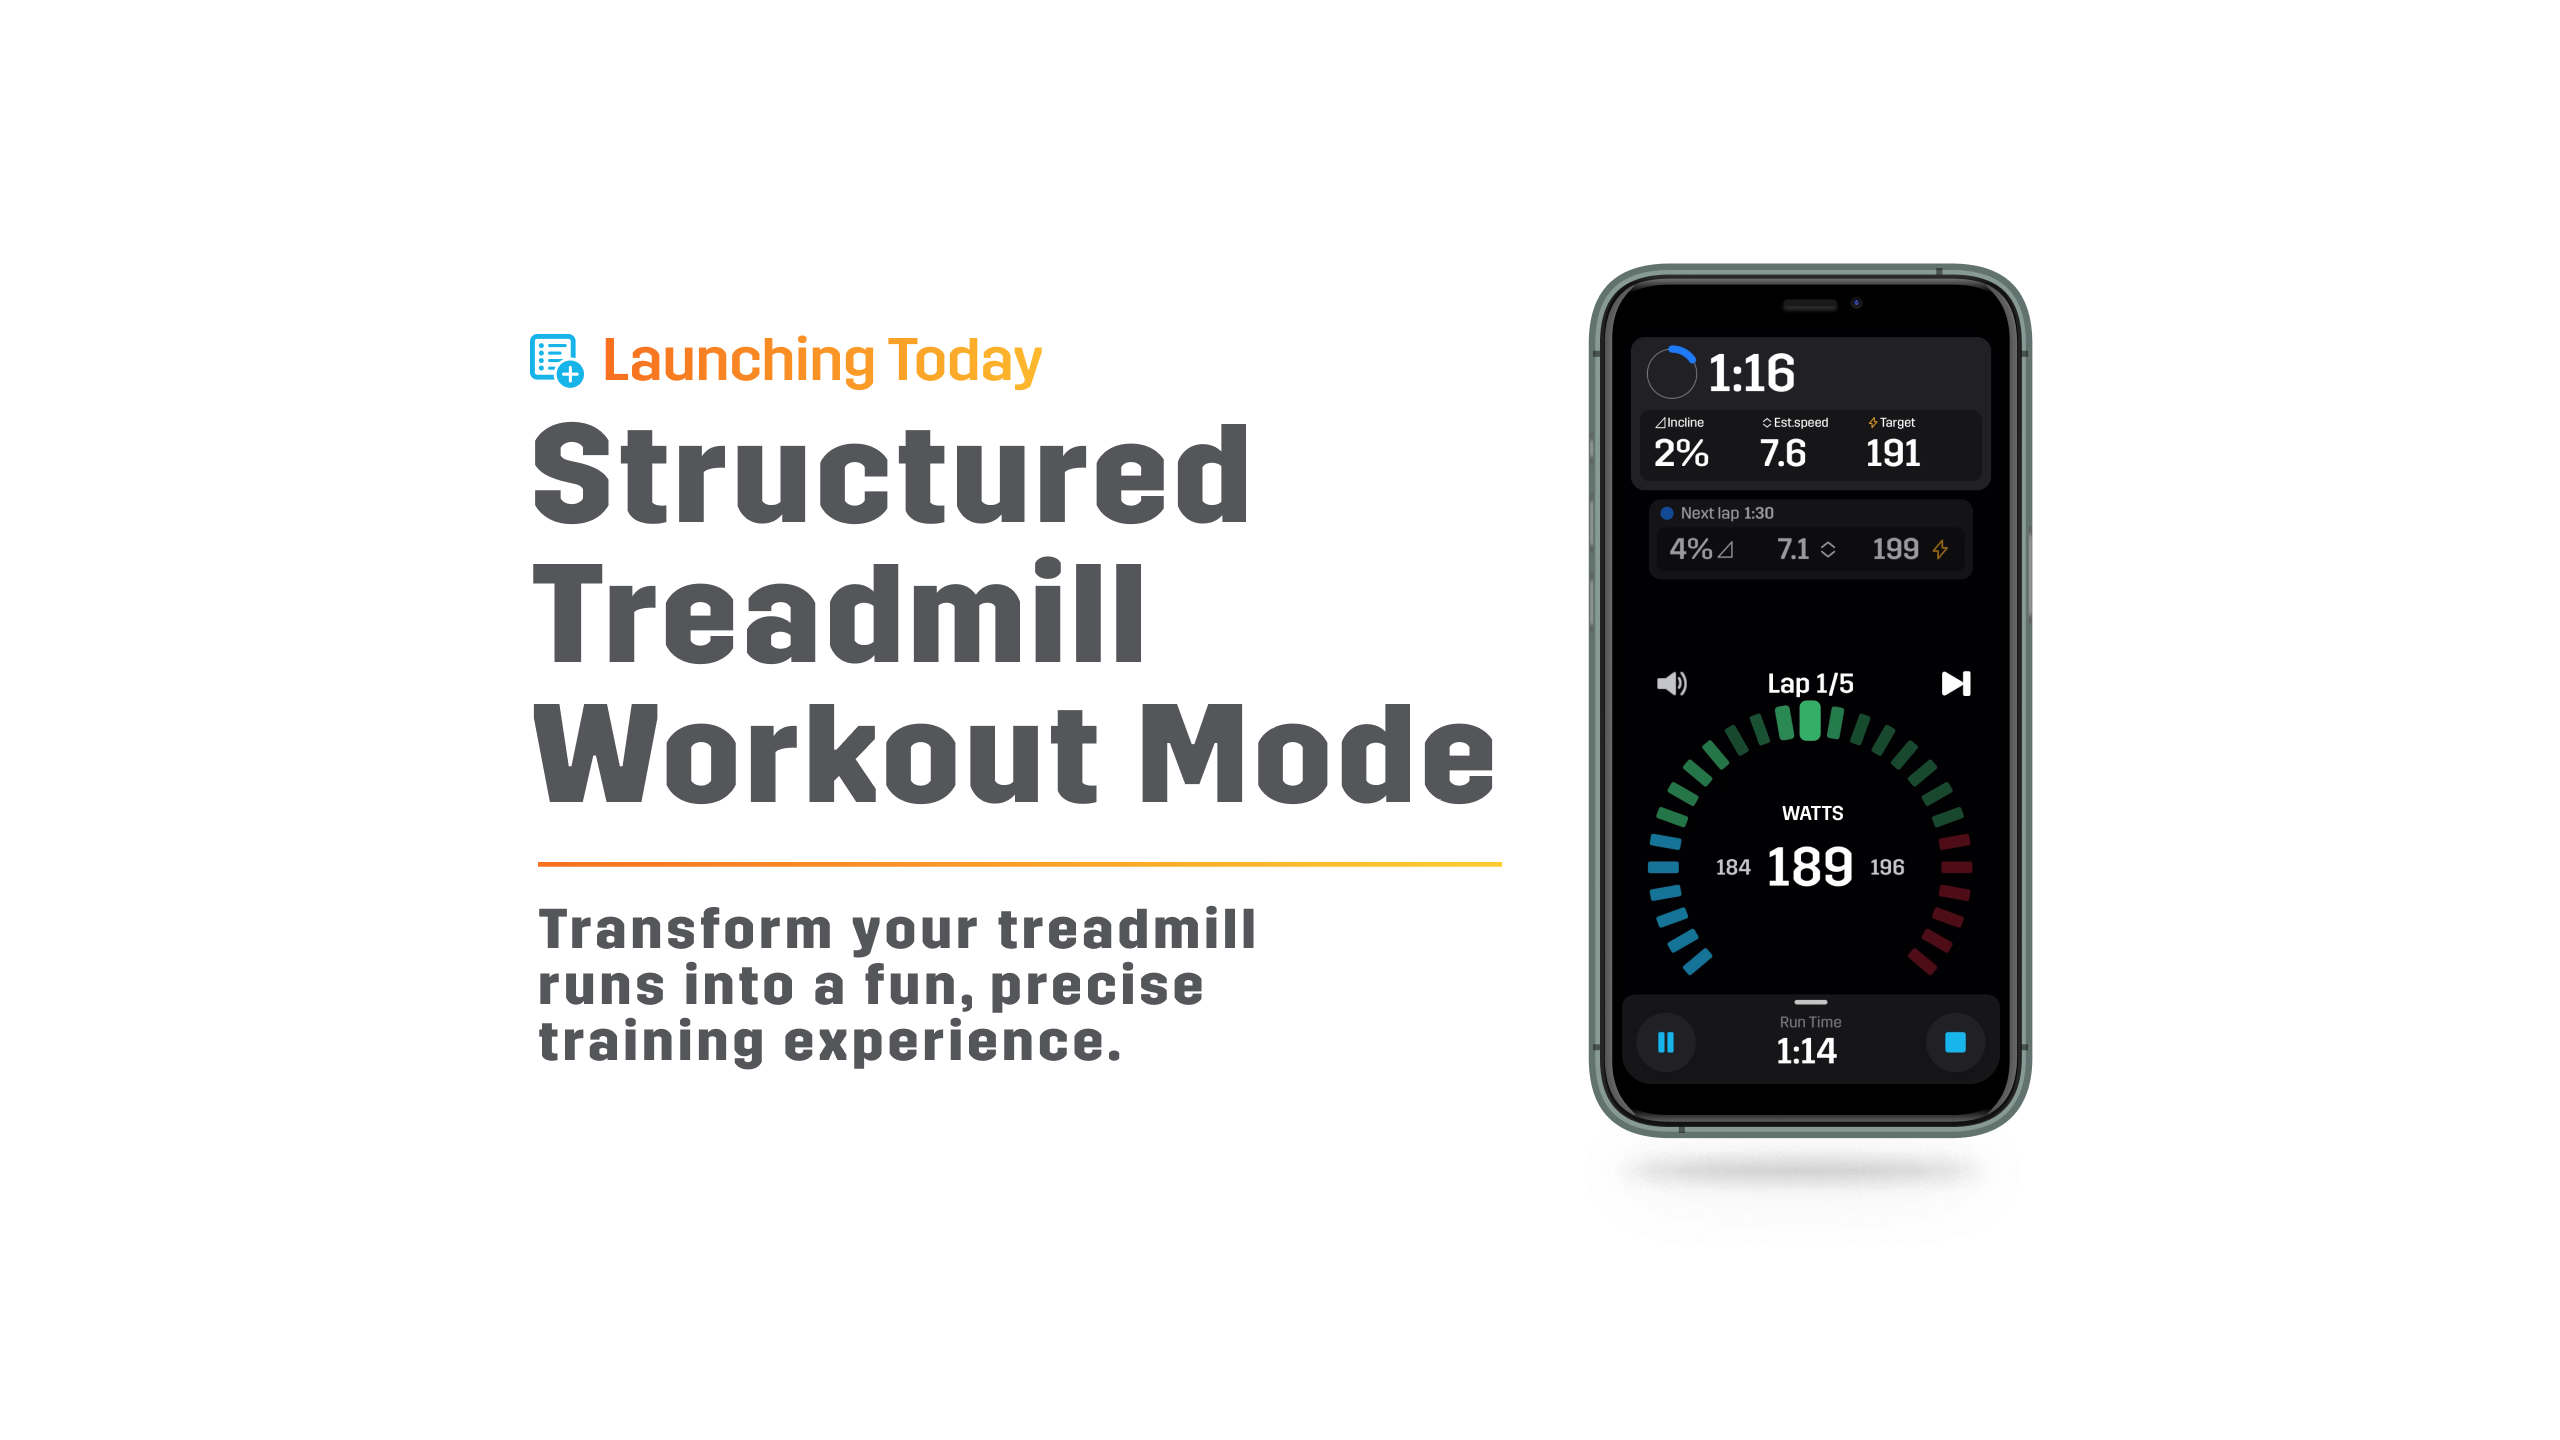 跑步機 x Stryd 跑步功率計: 功能更新 - 結構式跑步機鍛煉模式 (Structured Treadmill Workout Mode)